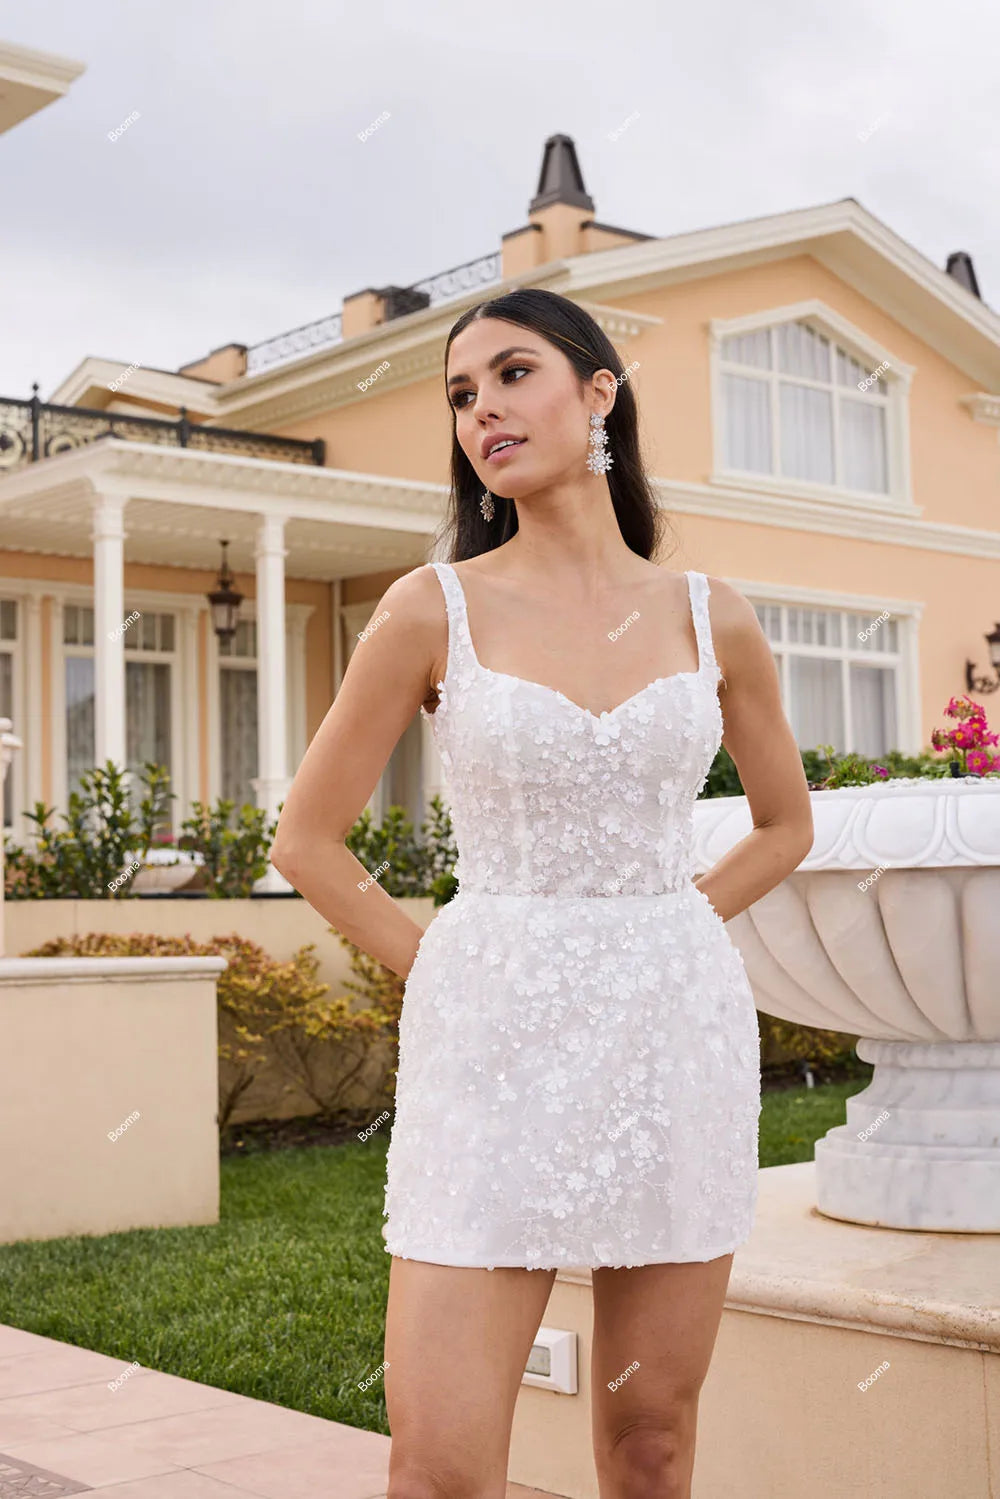 Luxus Mini Hochzeitsfeier Kleider gegen Nacken ärmellose Perlenbrautkleider für Frauen Meerjungfrau Brides Abend Abschlussballkleider